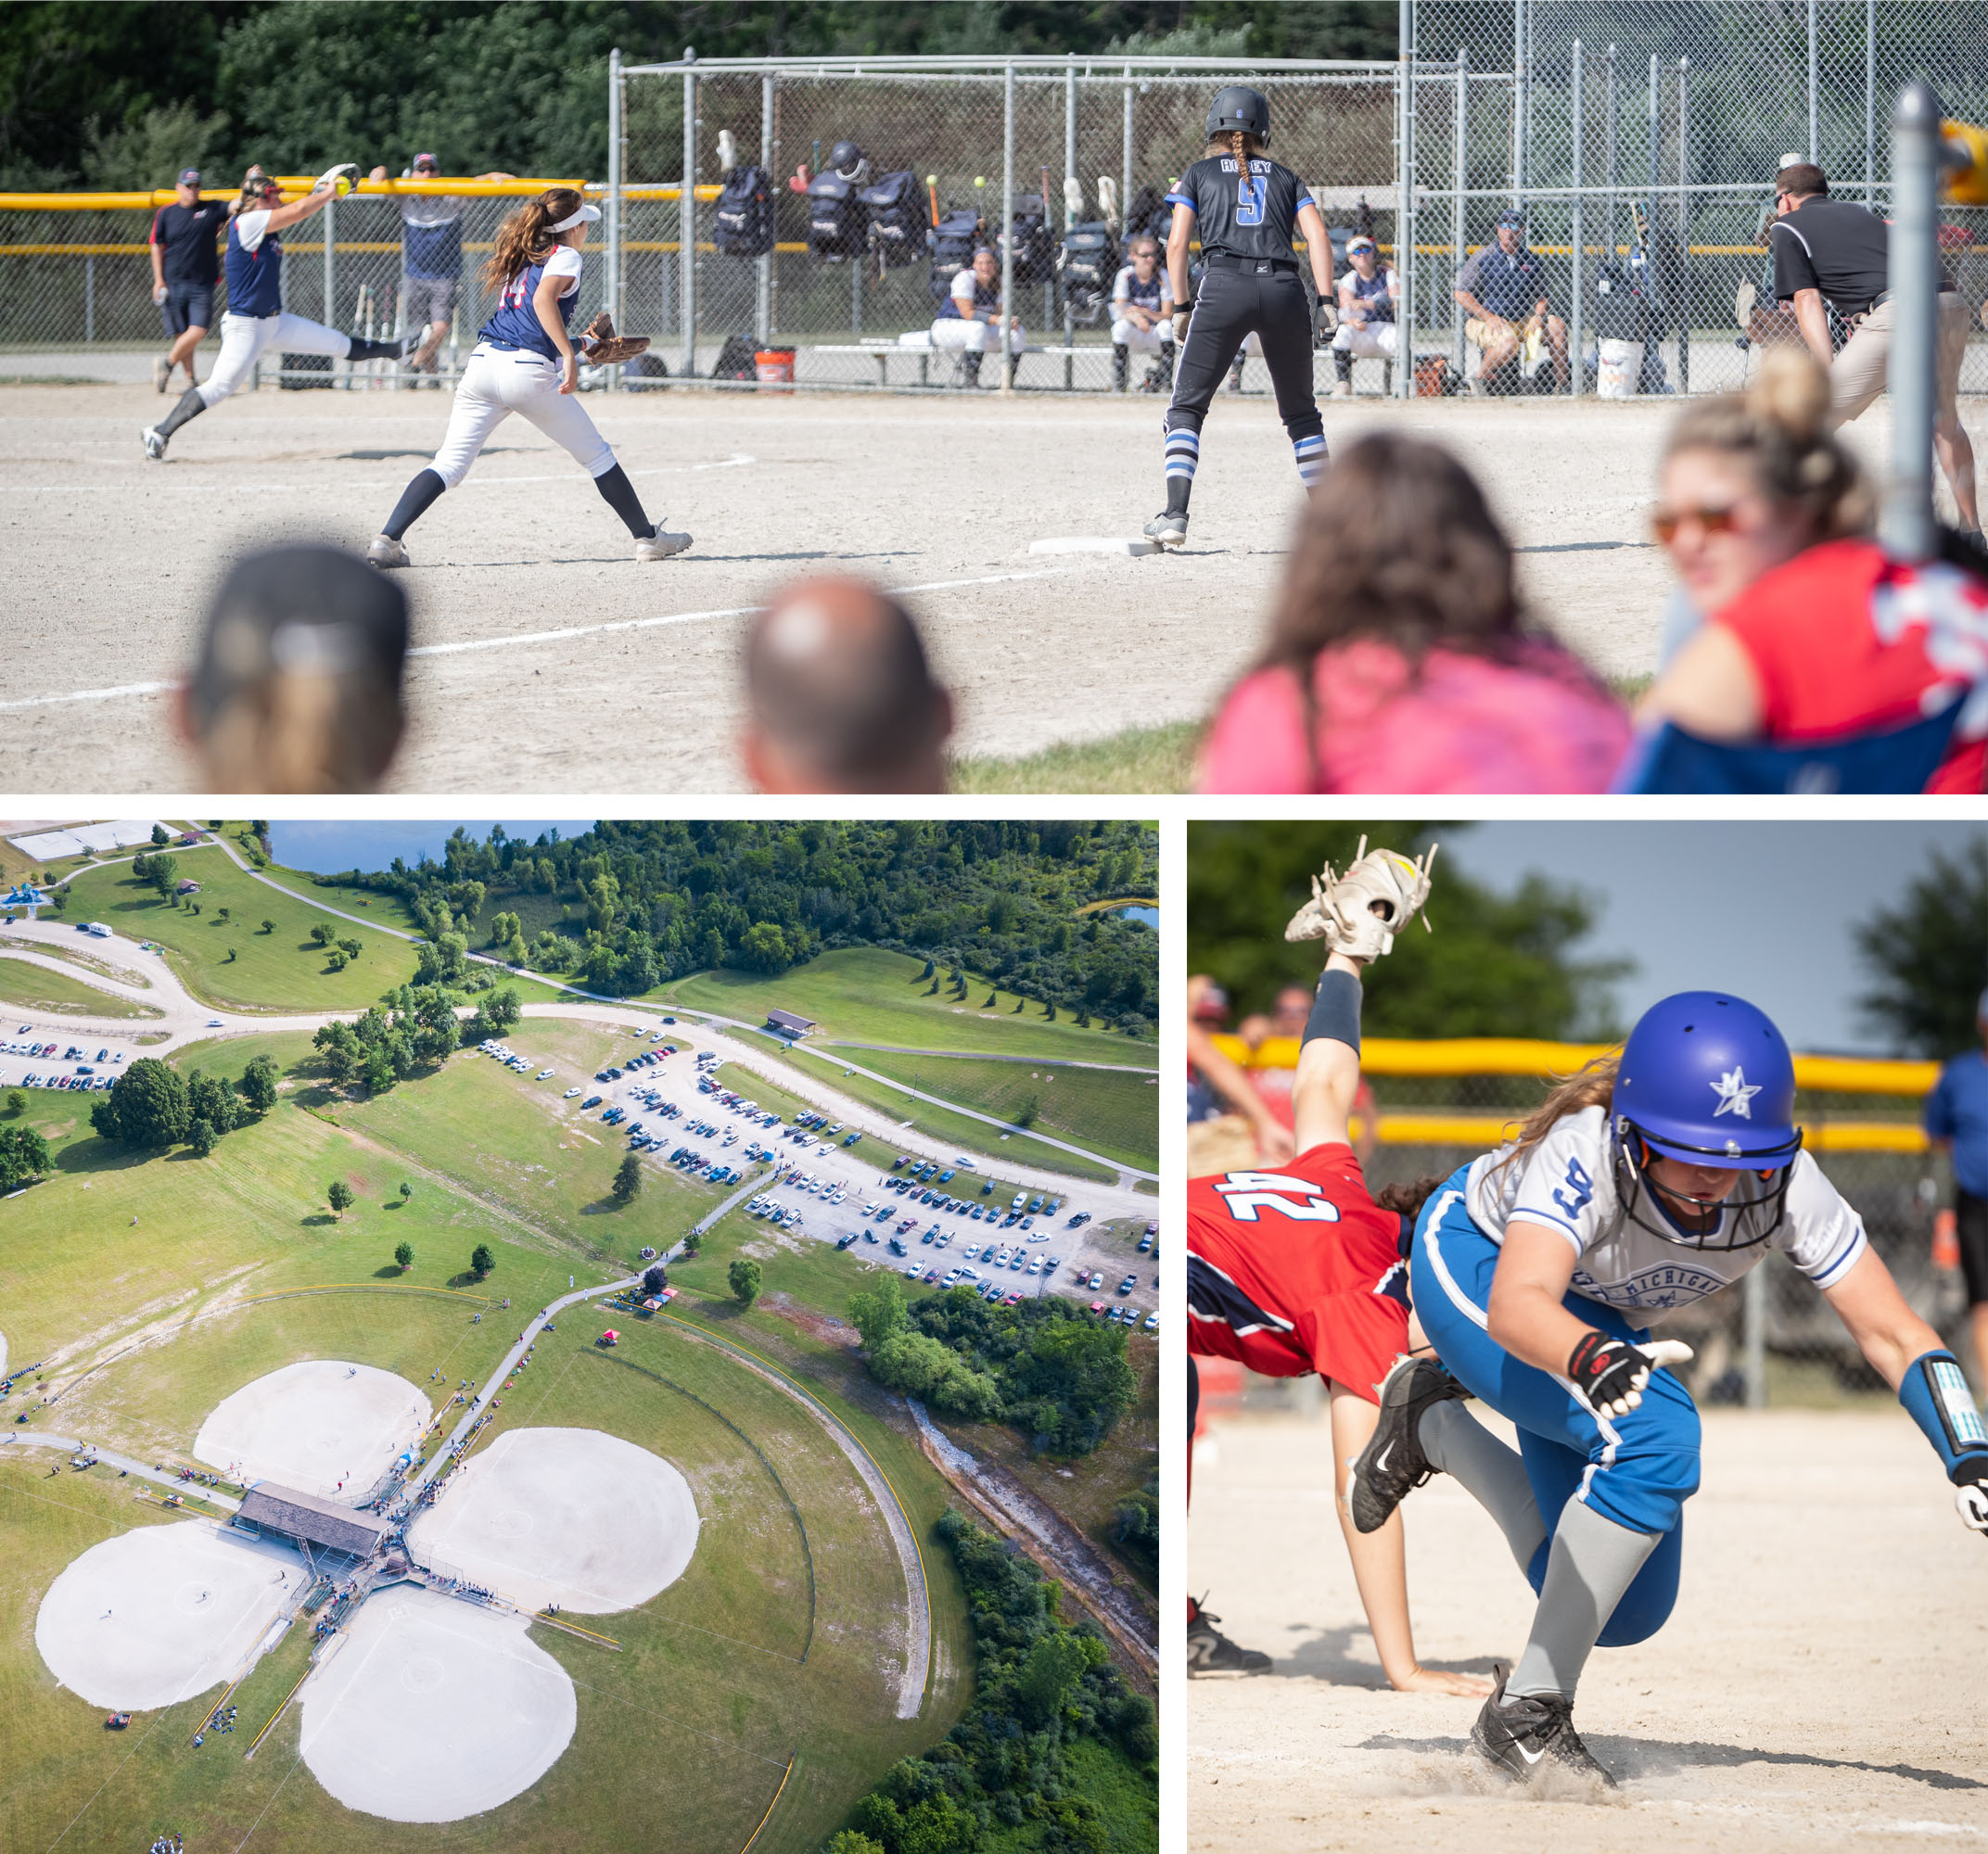 Firestix Softball Tournament held at Bicentennial Park in Grand Blanc, MI